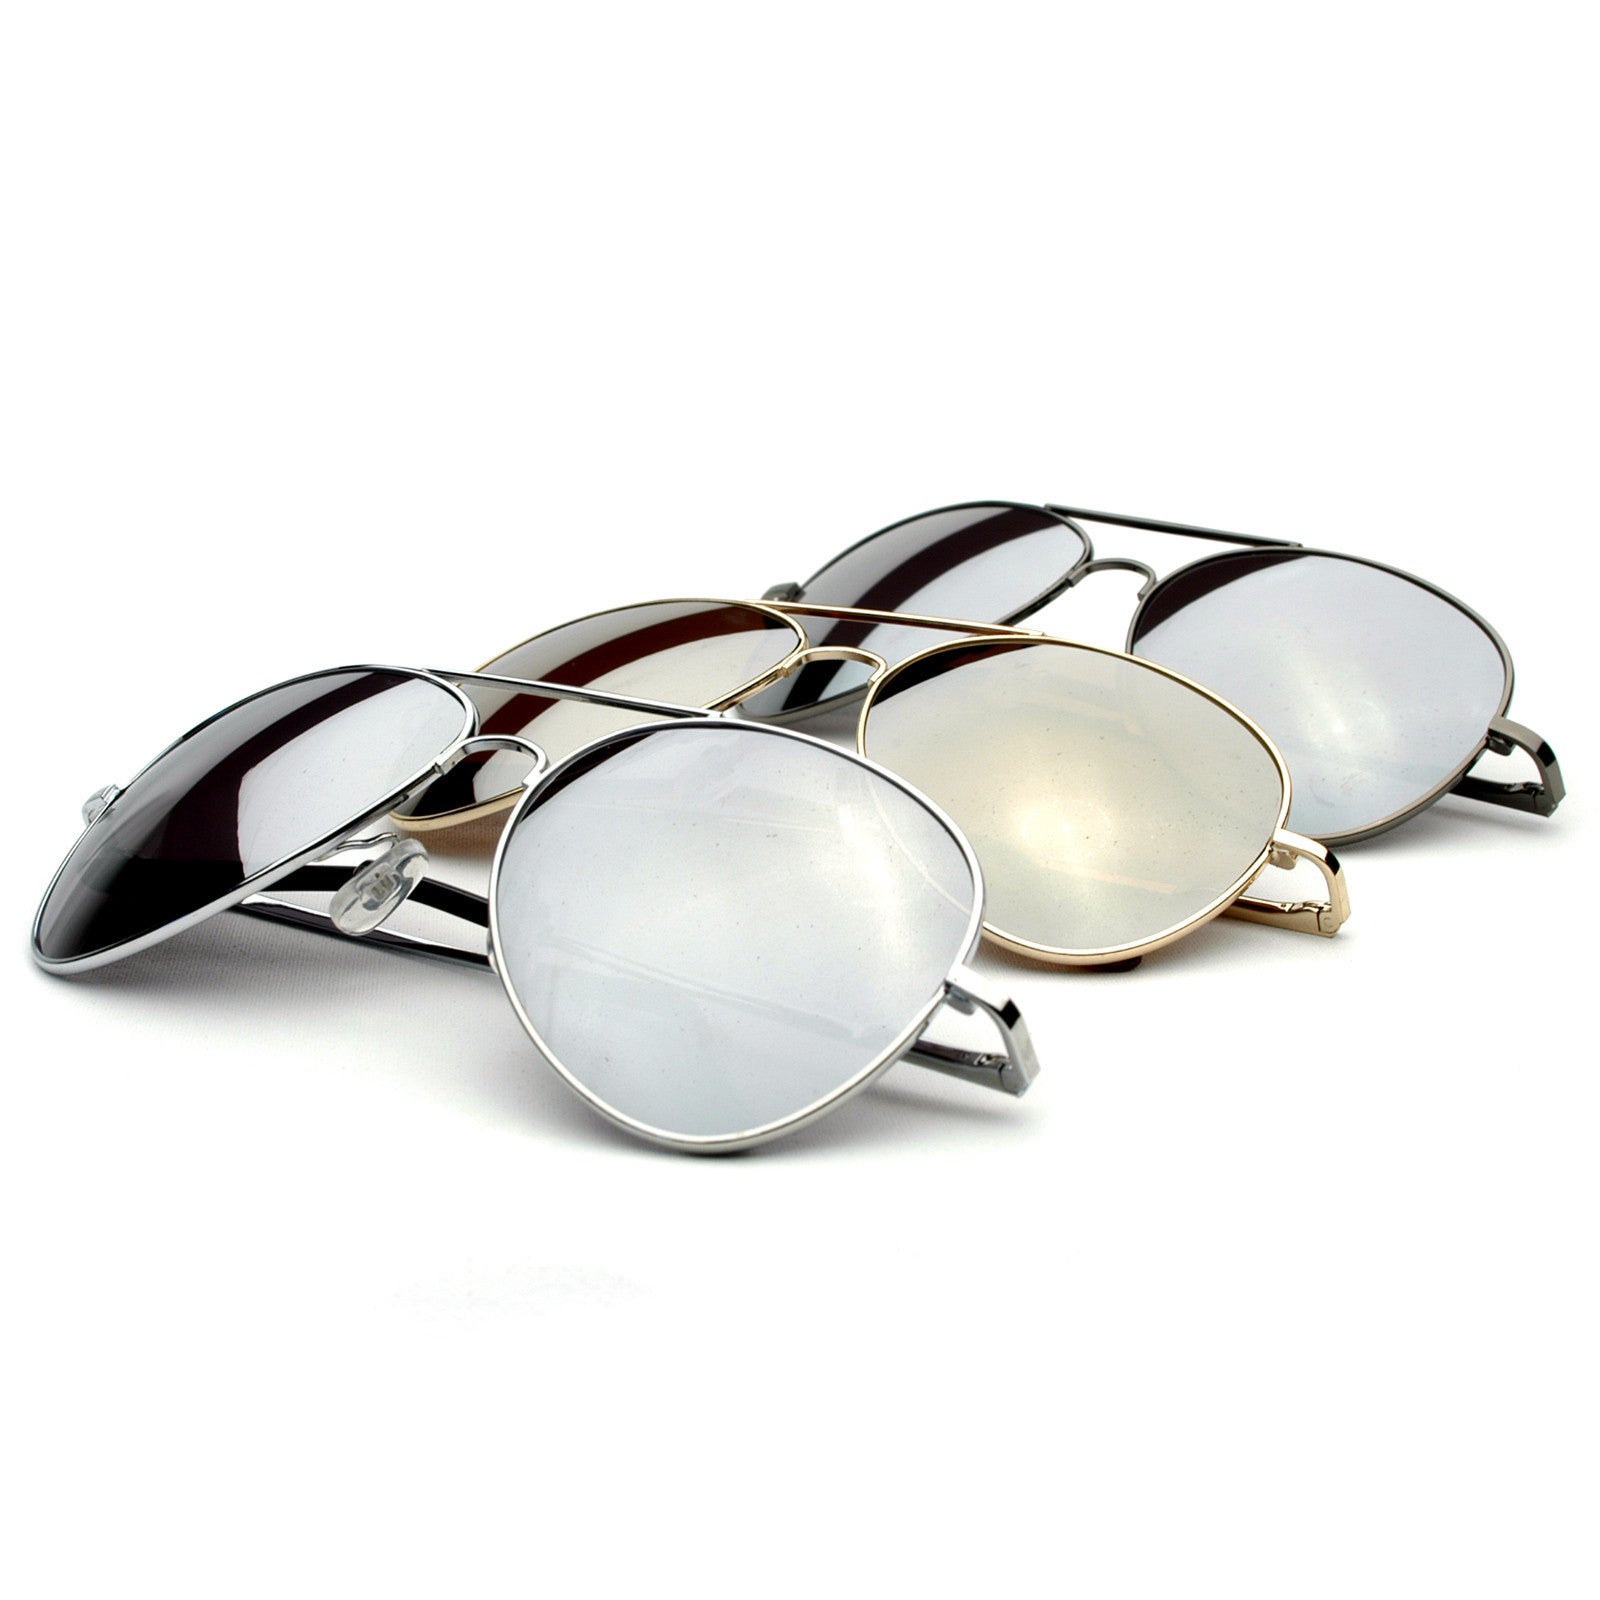 Military Classic Mirrored Metal Aviator Sunglasses - zeroUV